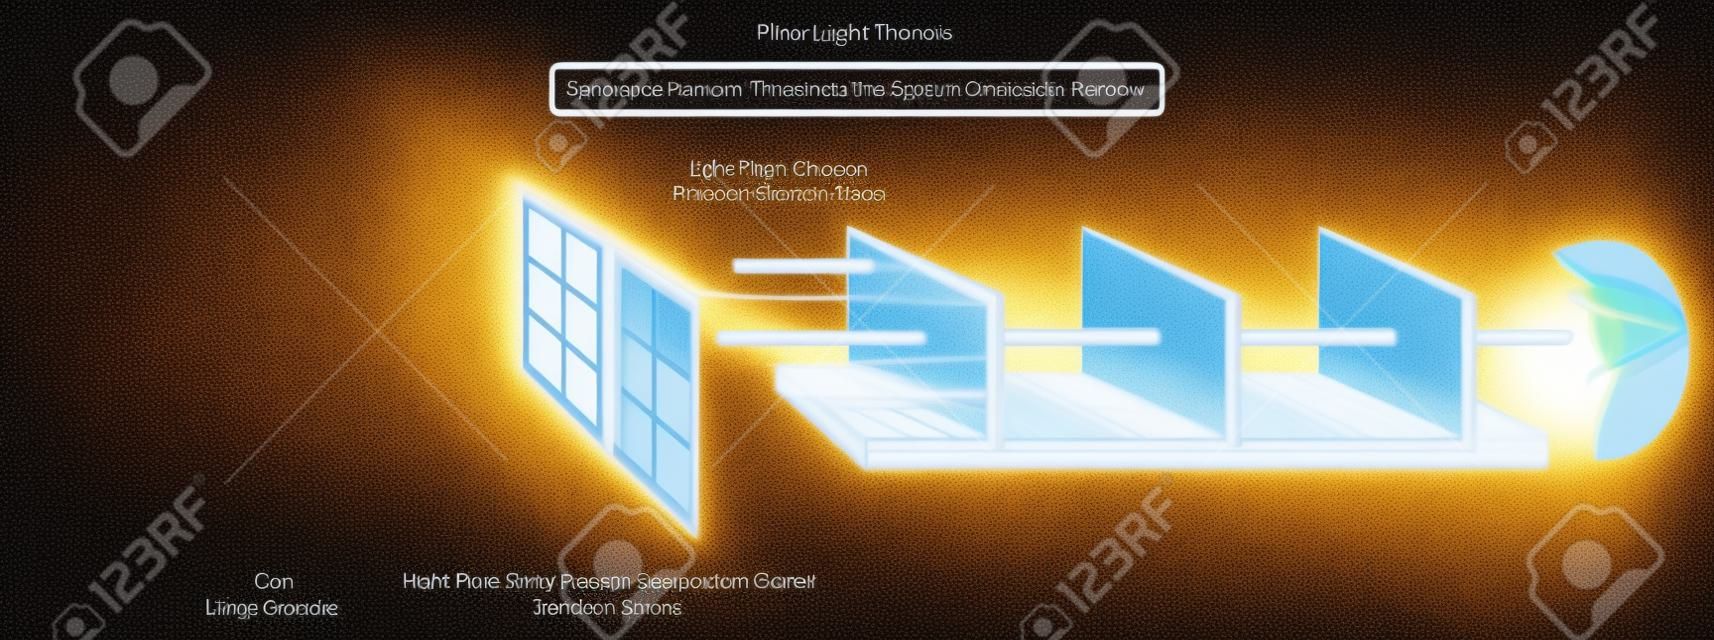 光源の太陽と光線が物理学科学教育のために直線で透明なオブジェクトウィンドウガラスを通過する様子を示す光の移動インフォグラフィック図